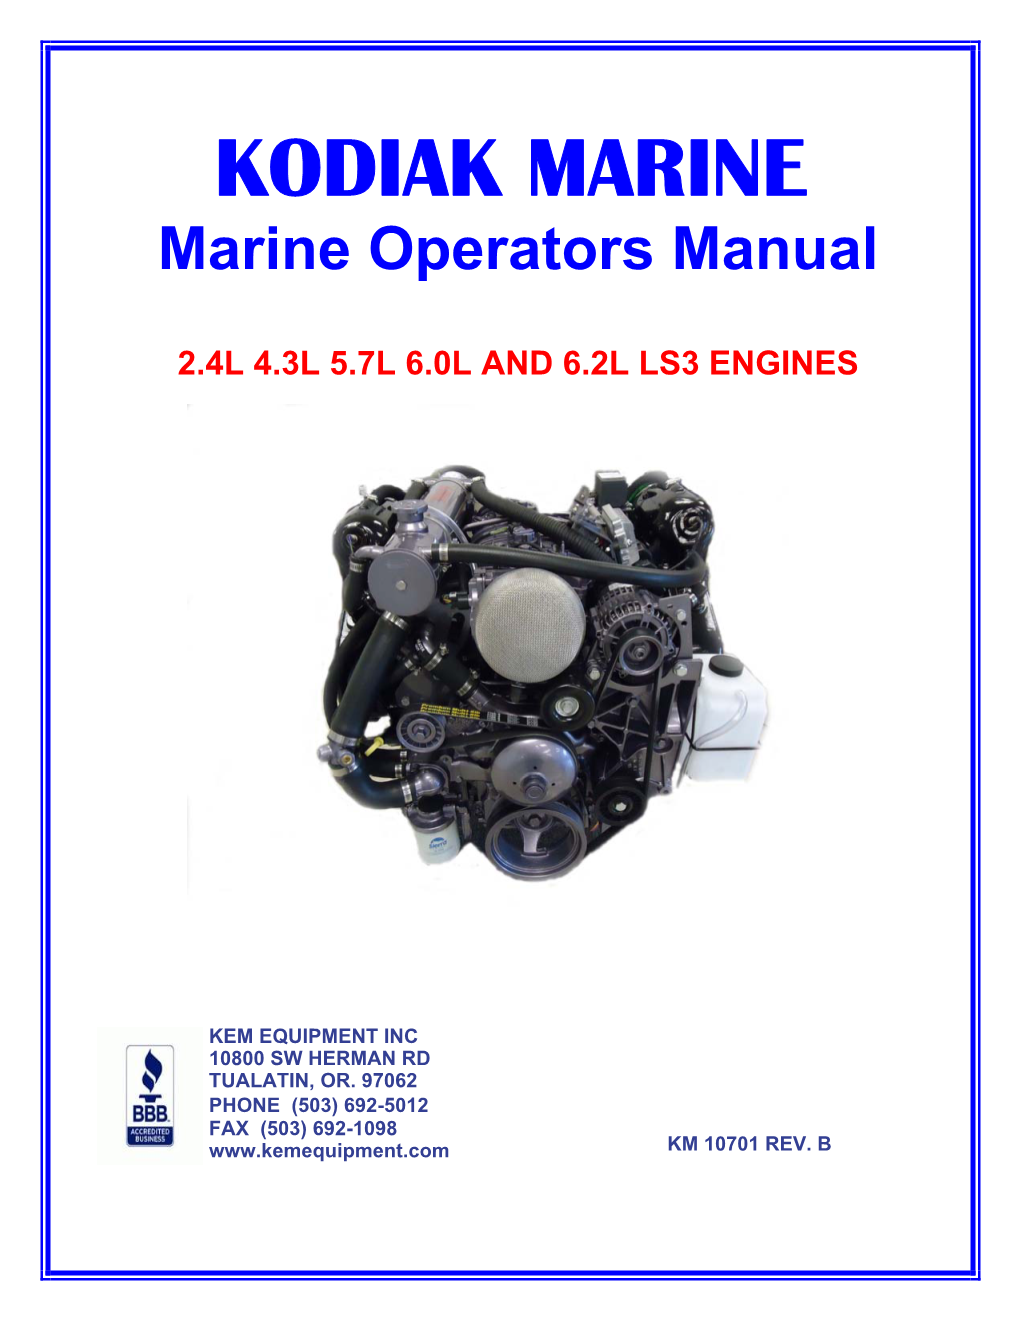 Kodiak Marine 2.4L, 4.3L, 5.7L, 6.0L, 6.2L LS3 Operator's Manual